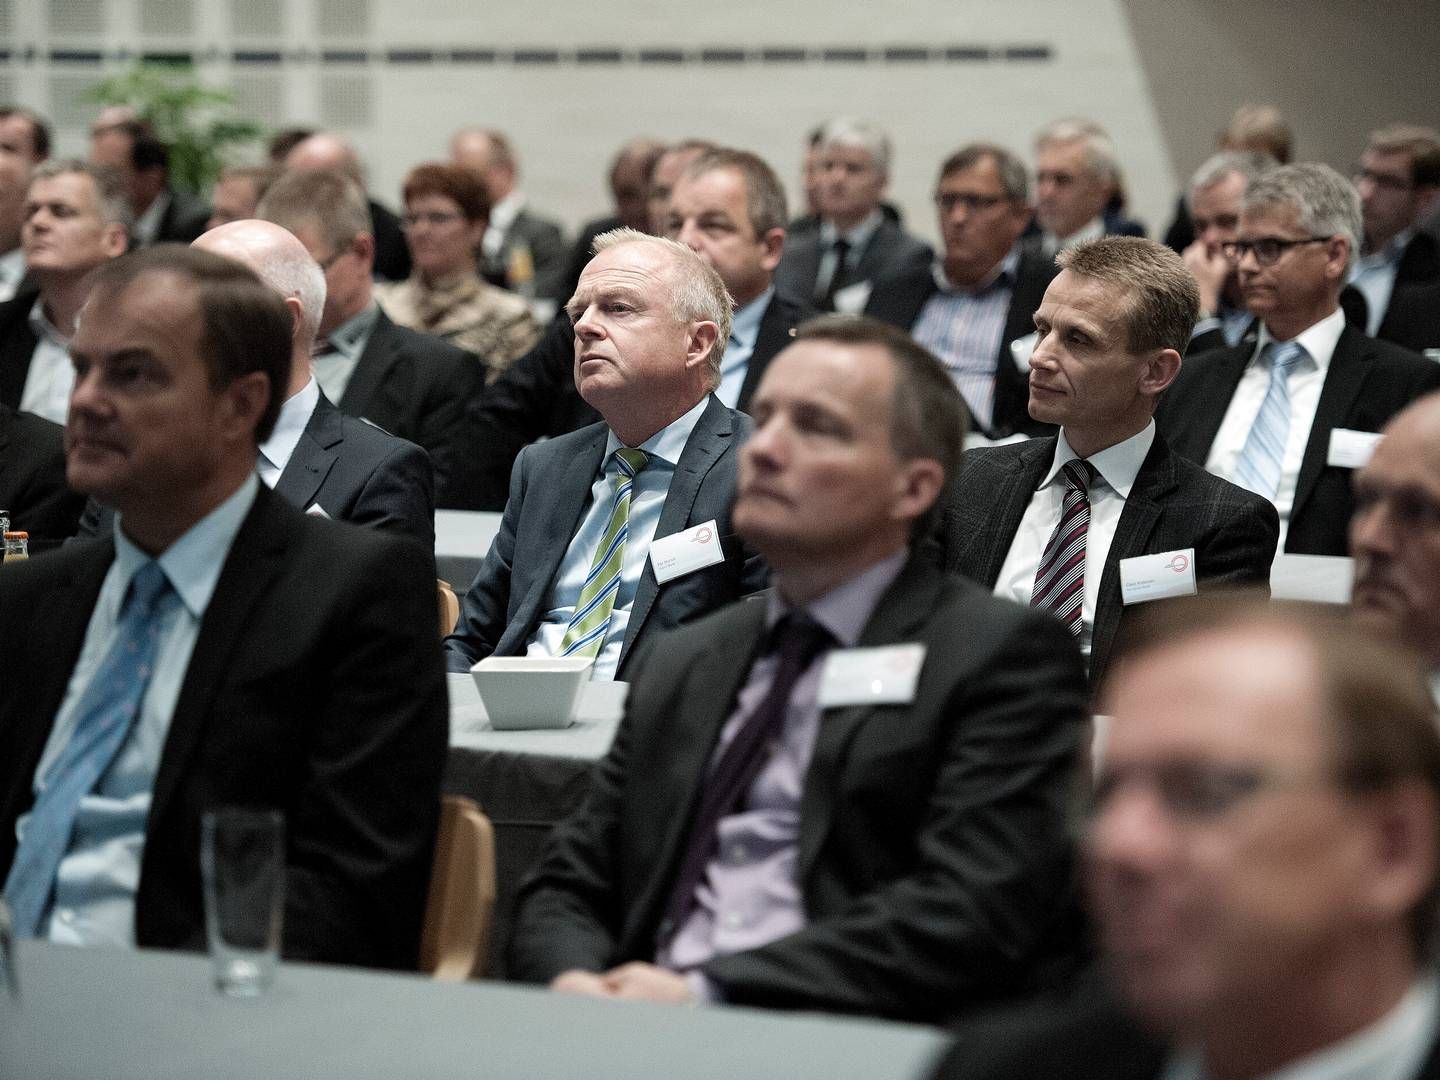 Lopis årsmøde finder sted i Aalborg torsdag. Her ses lyttende deltagere fra årsmødet i 2013. | Foto: Carsten Andreasen